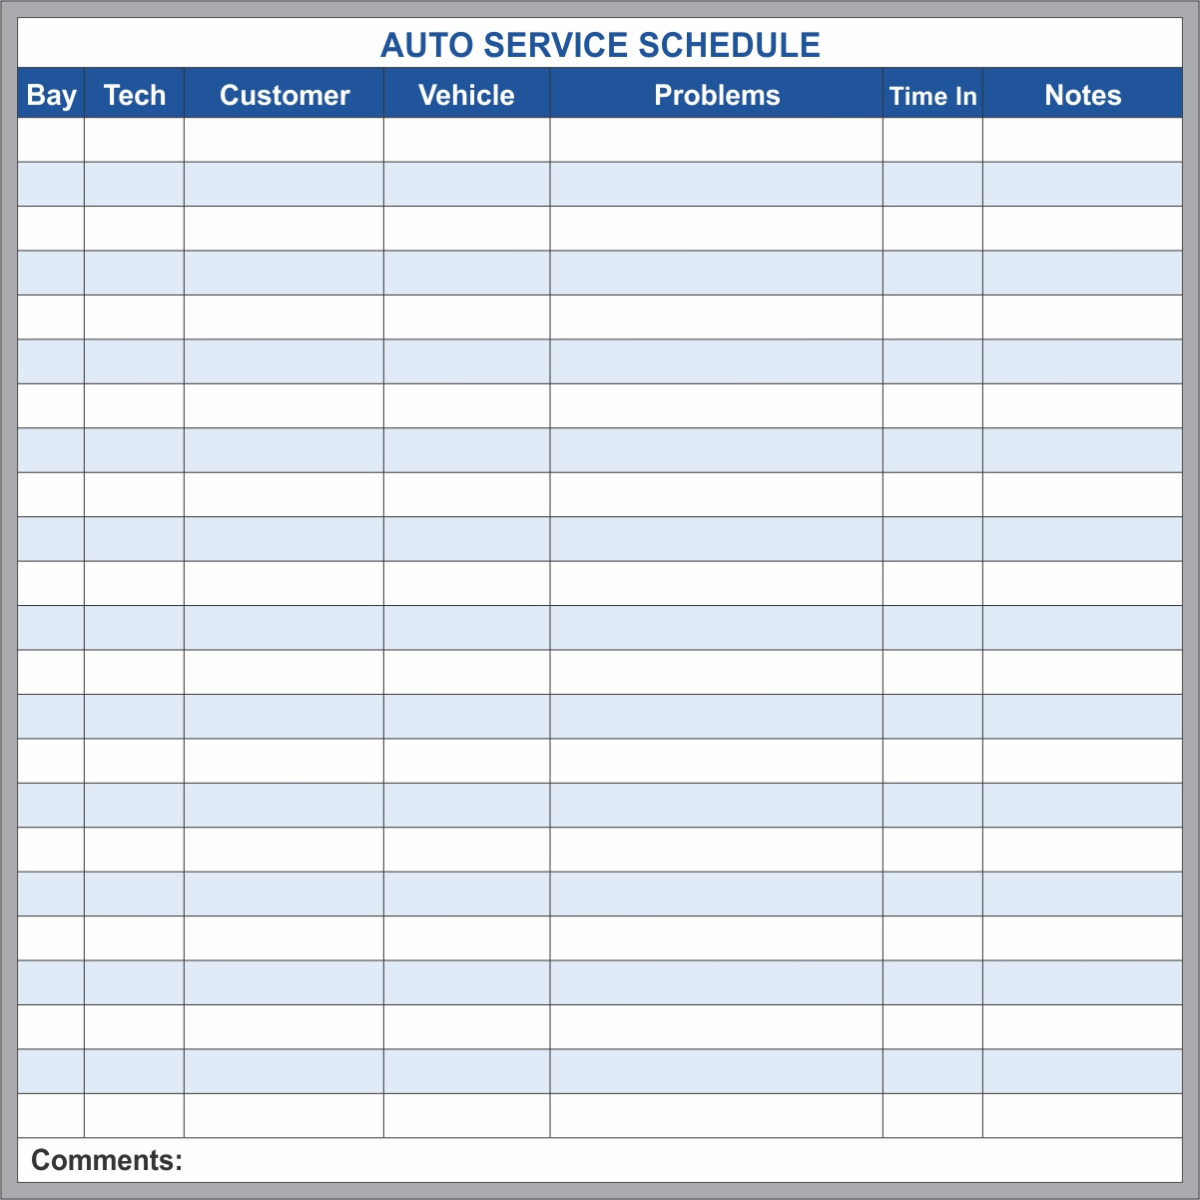 Auto Service Schedule 3x3